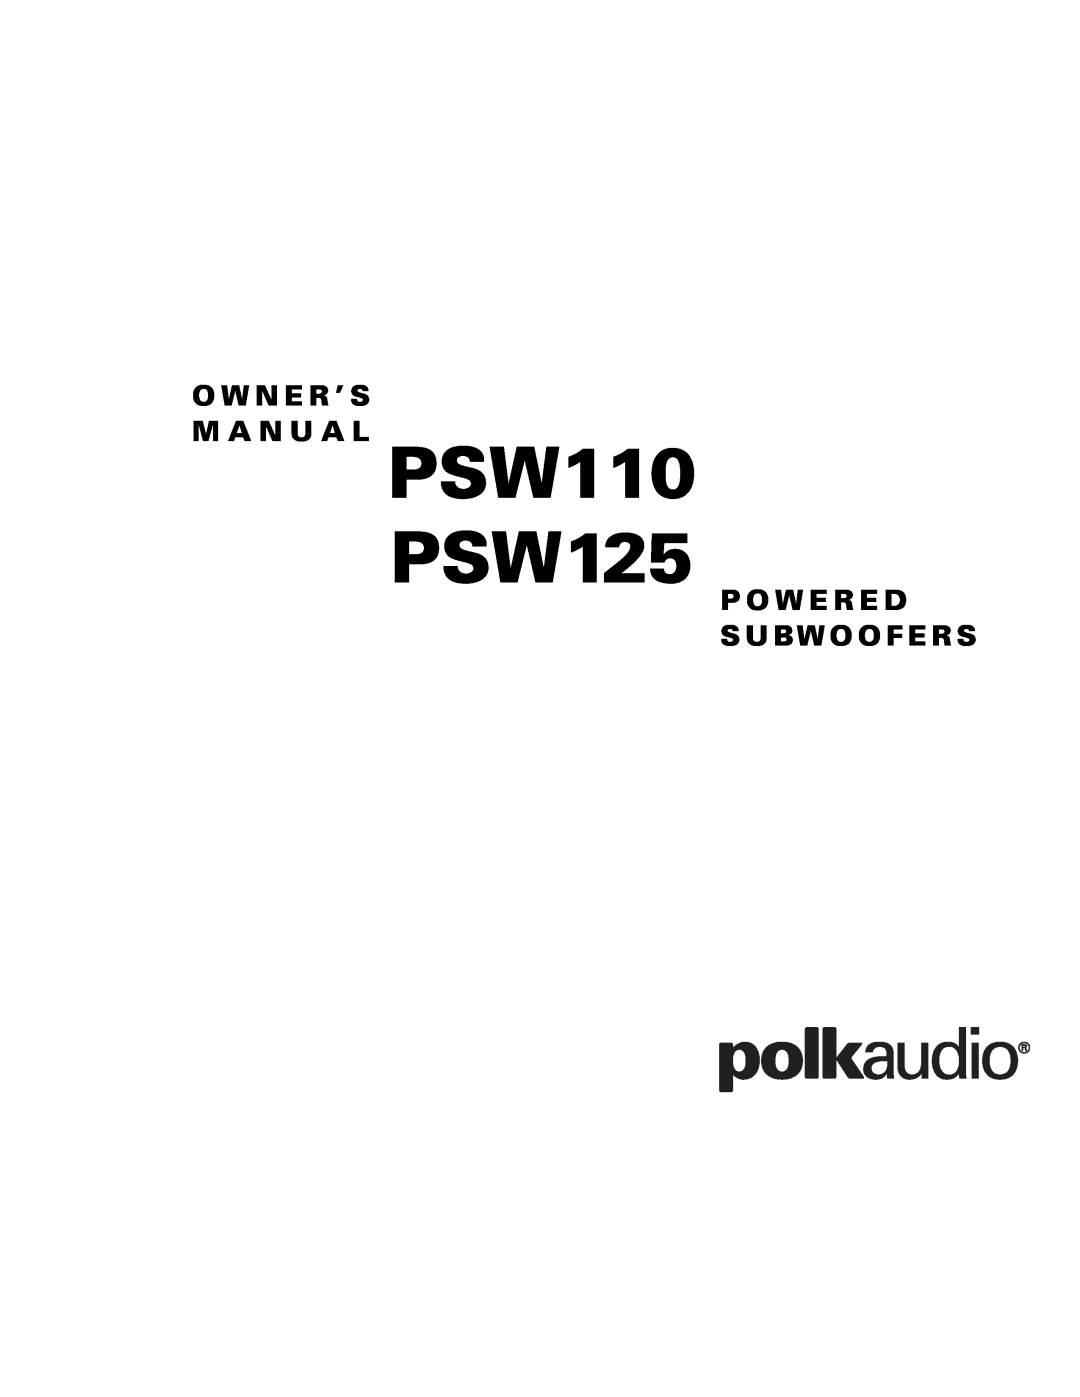 Polk Audio owner manual PSW110 PSW125, O W N E R ’ S M A N U A L, P O W E R E D S Ubw O O F E R S 